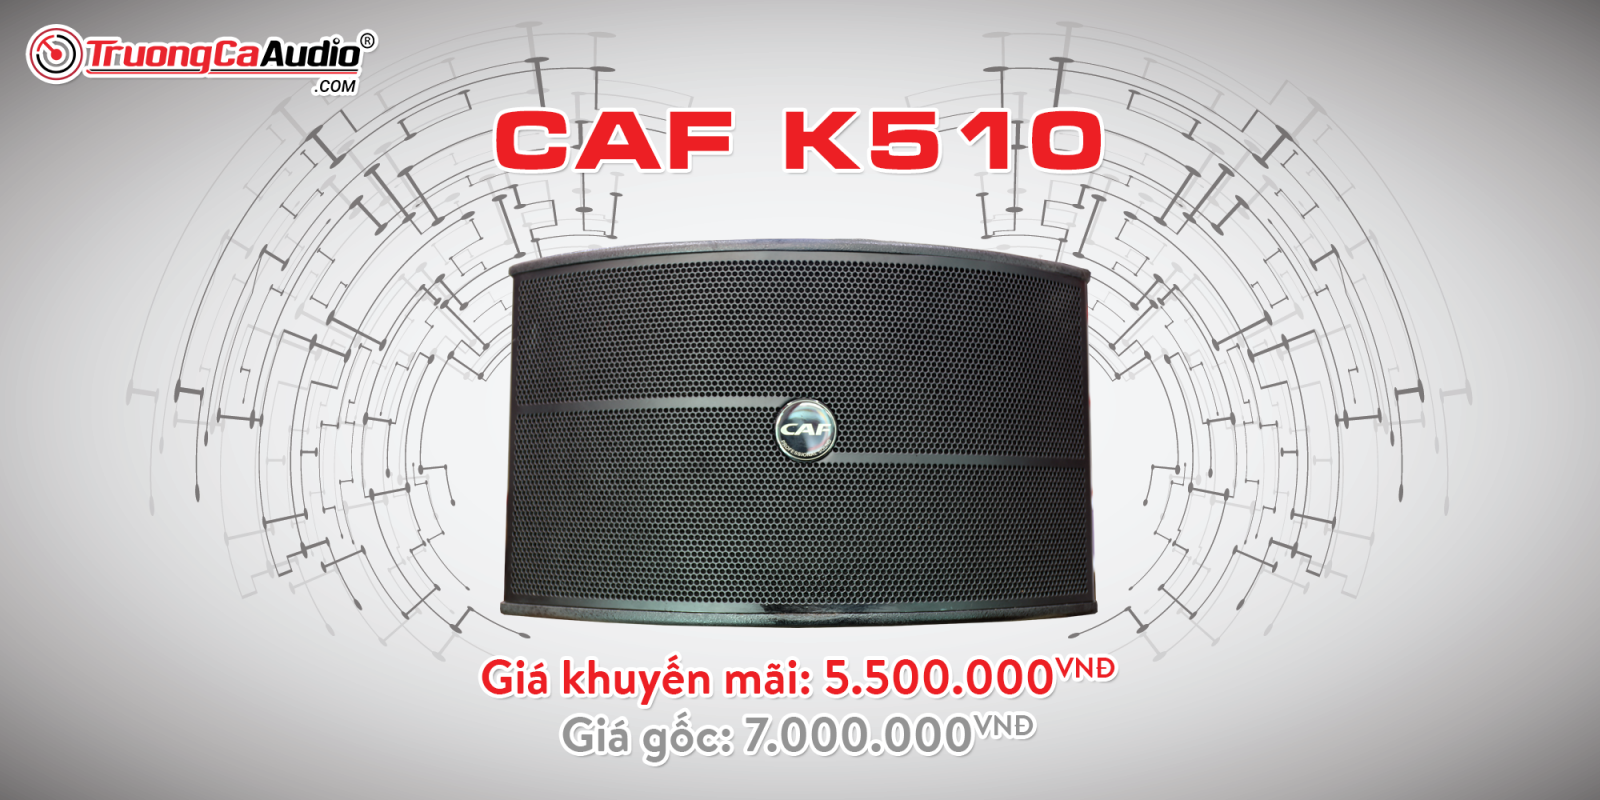 Loa CAF K510